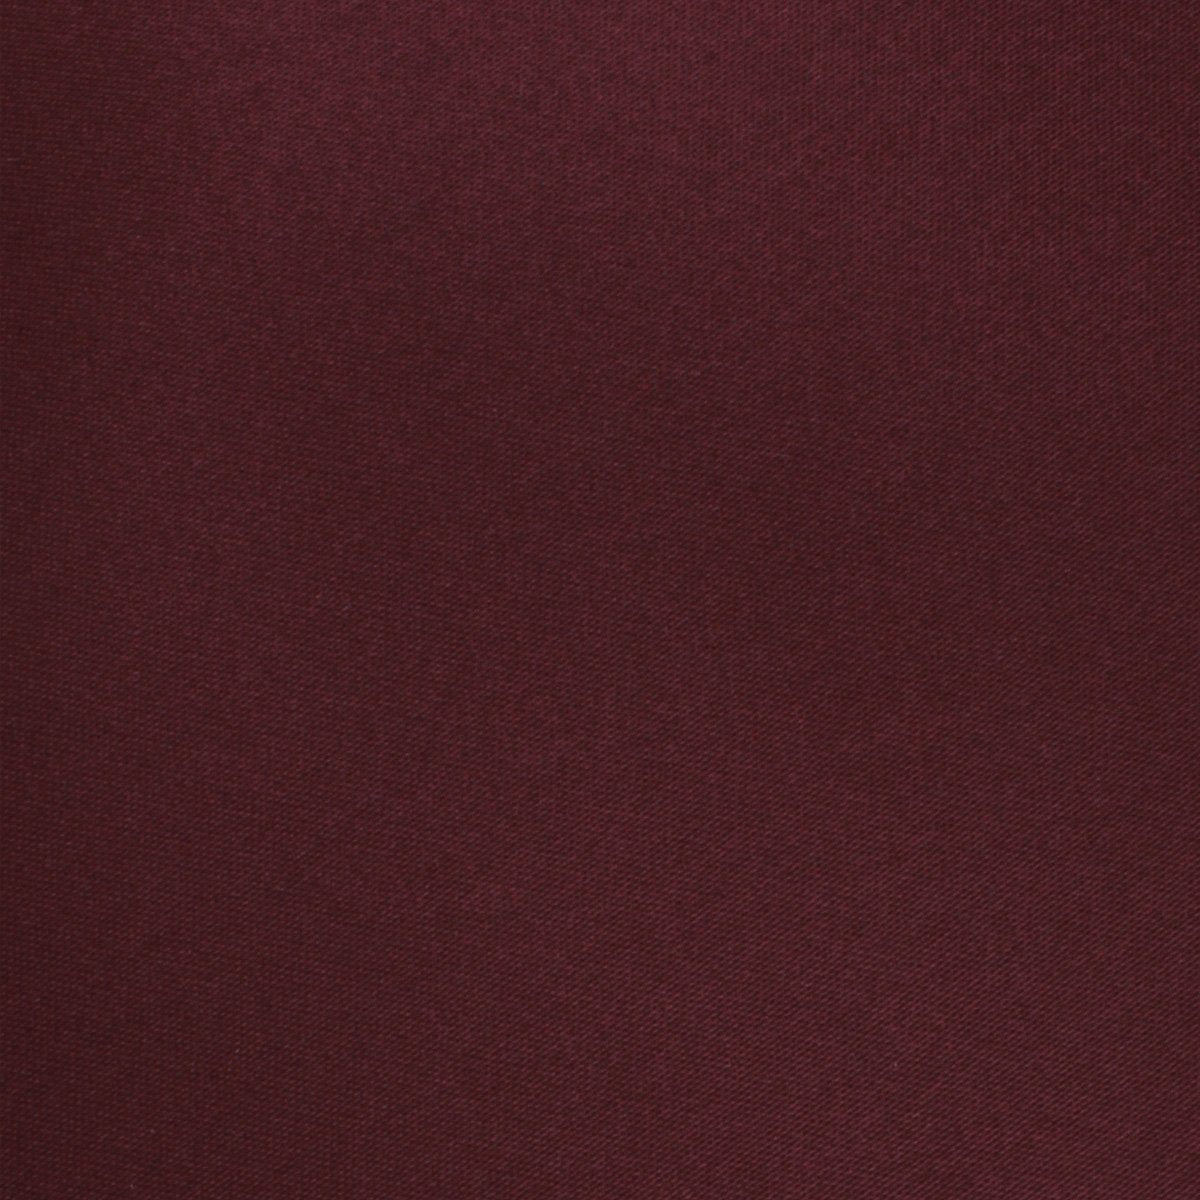 Dark Merlot Wine Satin Necktie Fabric